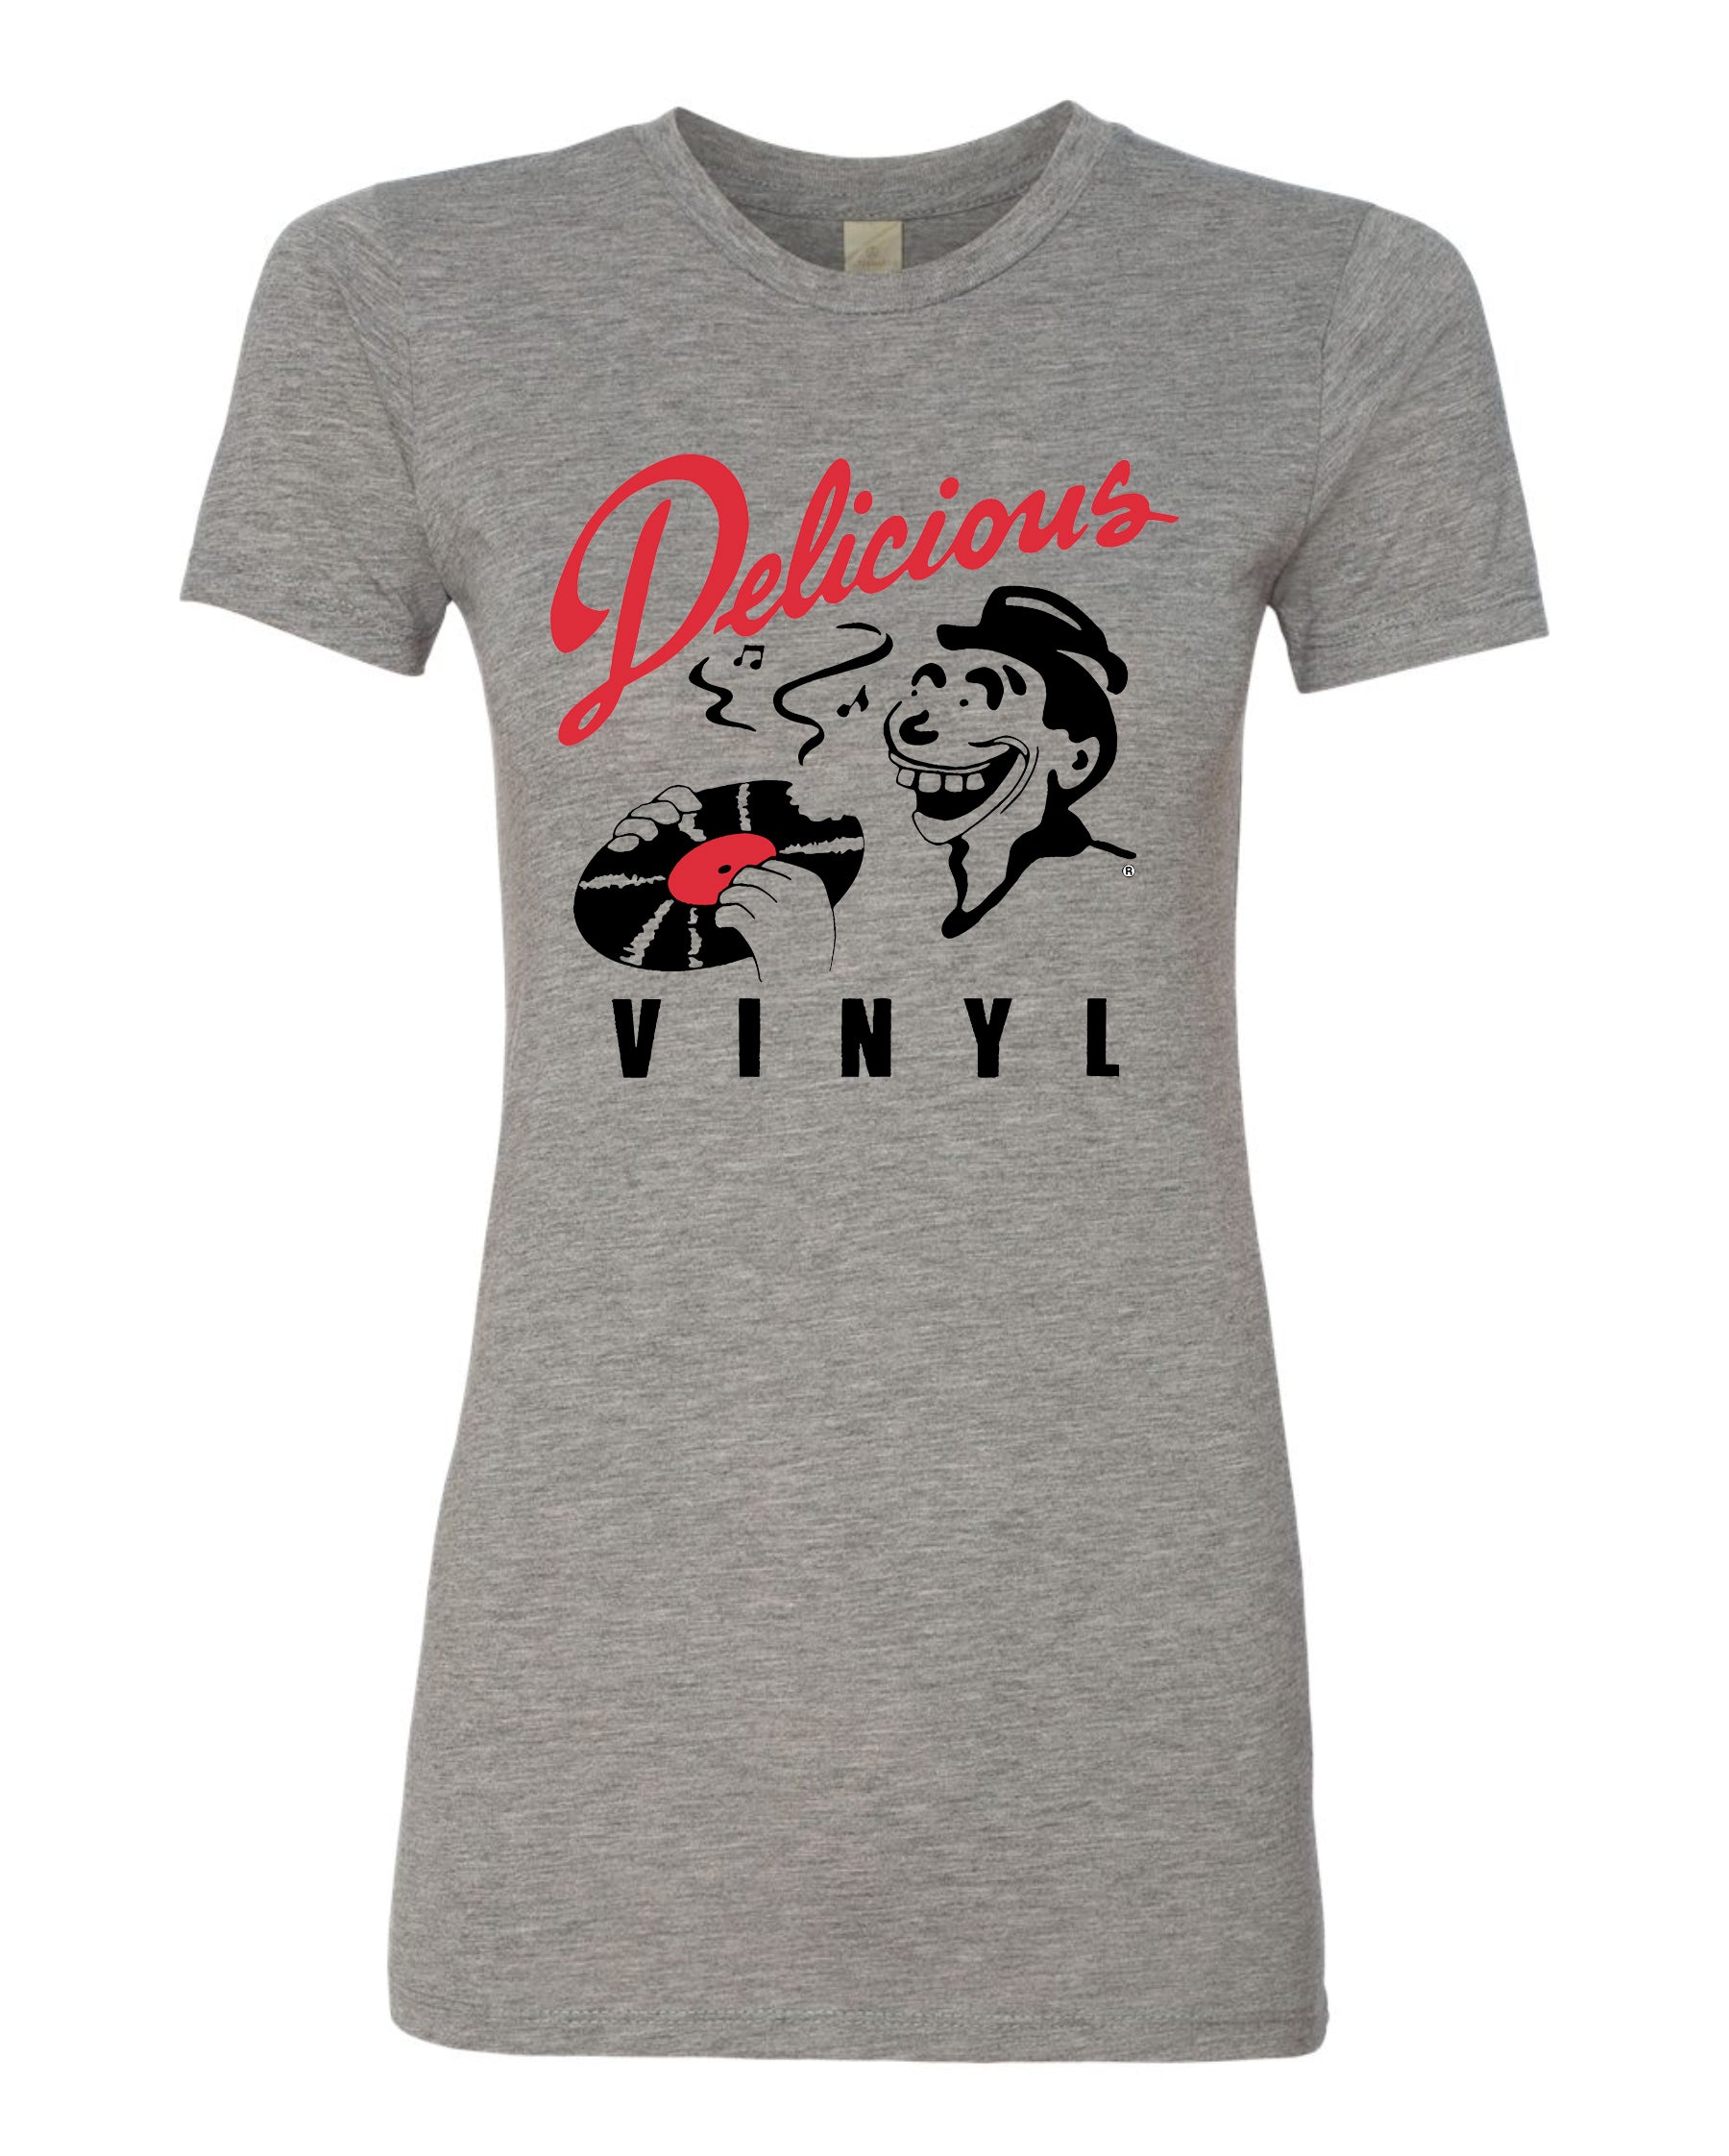 Delicious Vinyl - Delicious Vinyl womens Classic Logo tee - grey